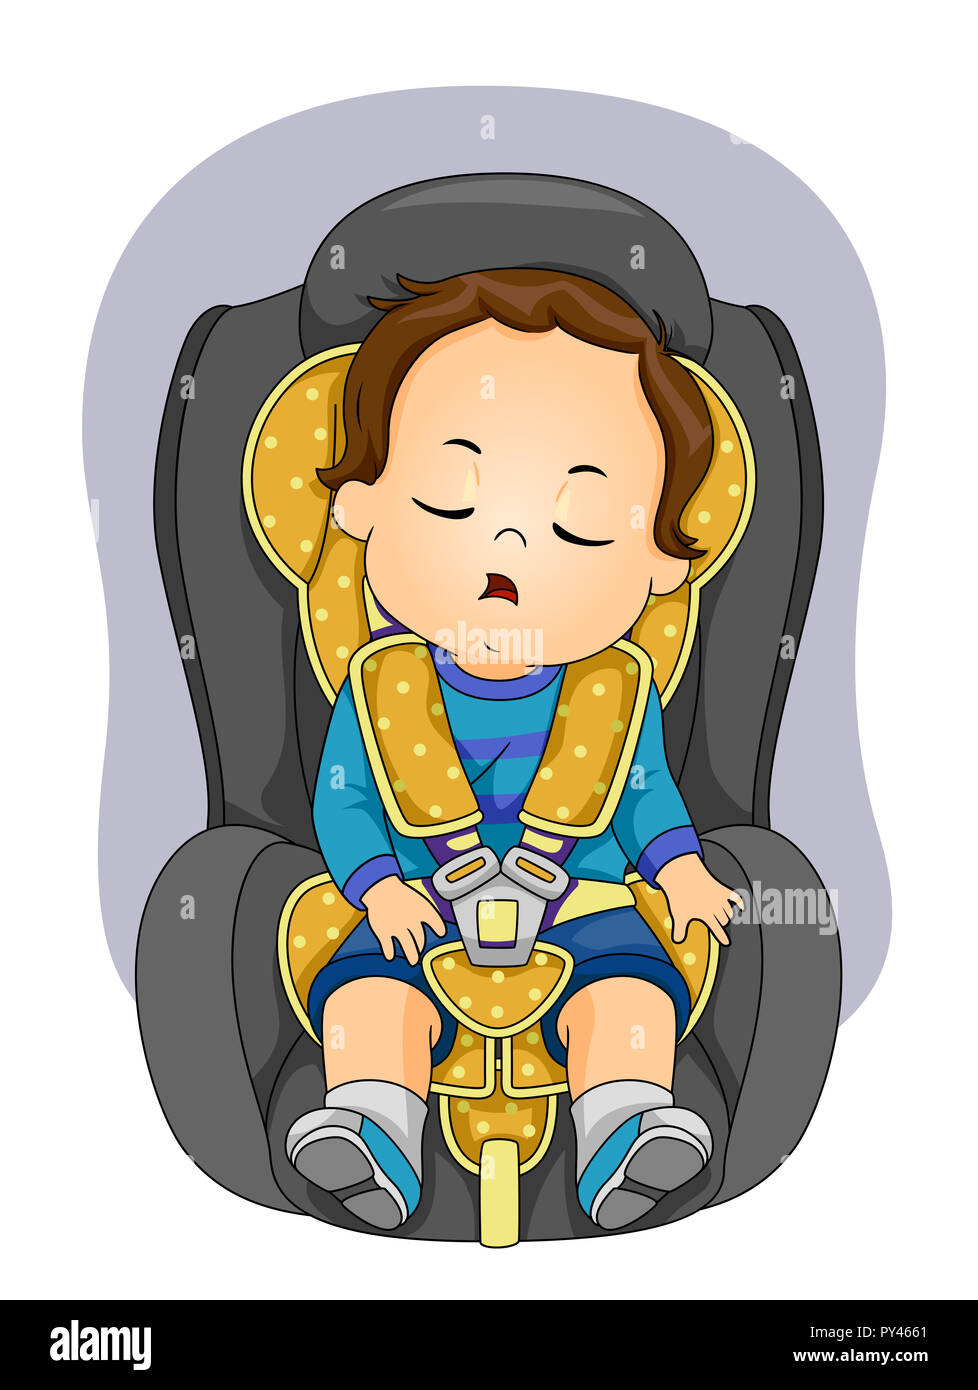 Ilustración de un niño niño niño durmiendo en el coche usando el cinturón  de seguridad Fotografía de stock - Alamy